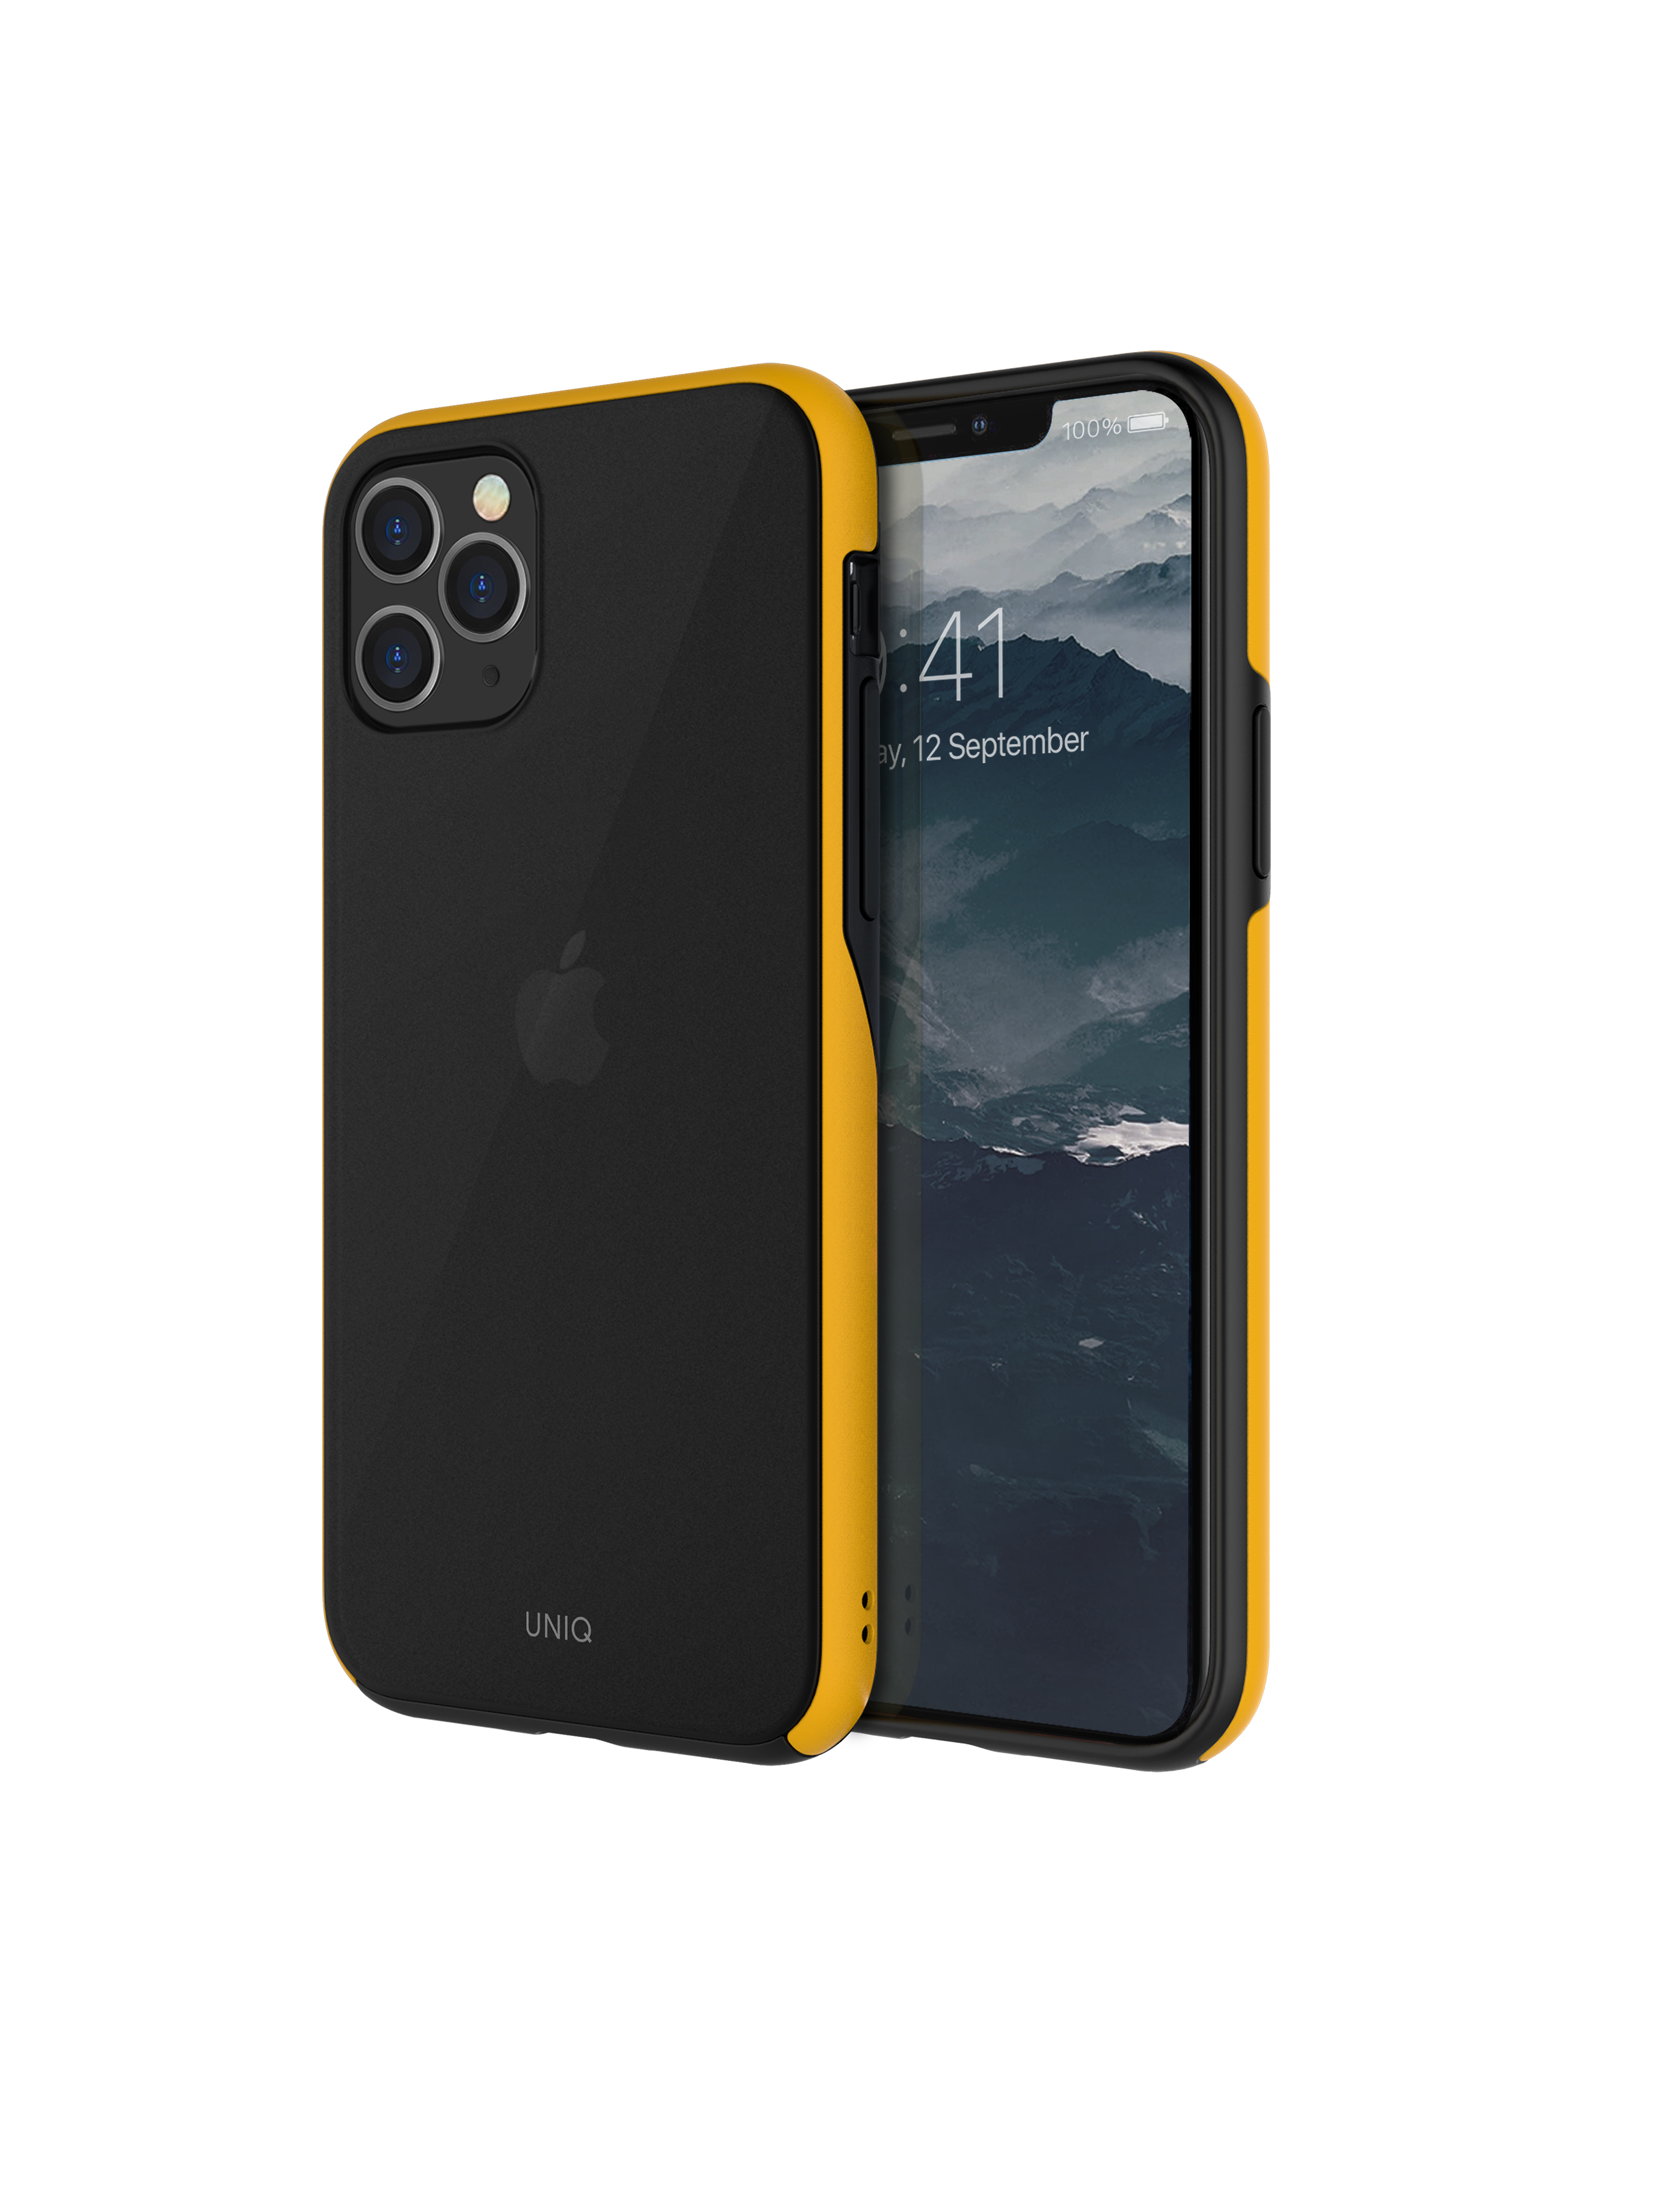 iPhone 11 Pro Max, hoesje vesto hue, zwart/geel